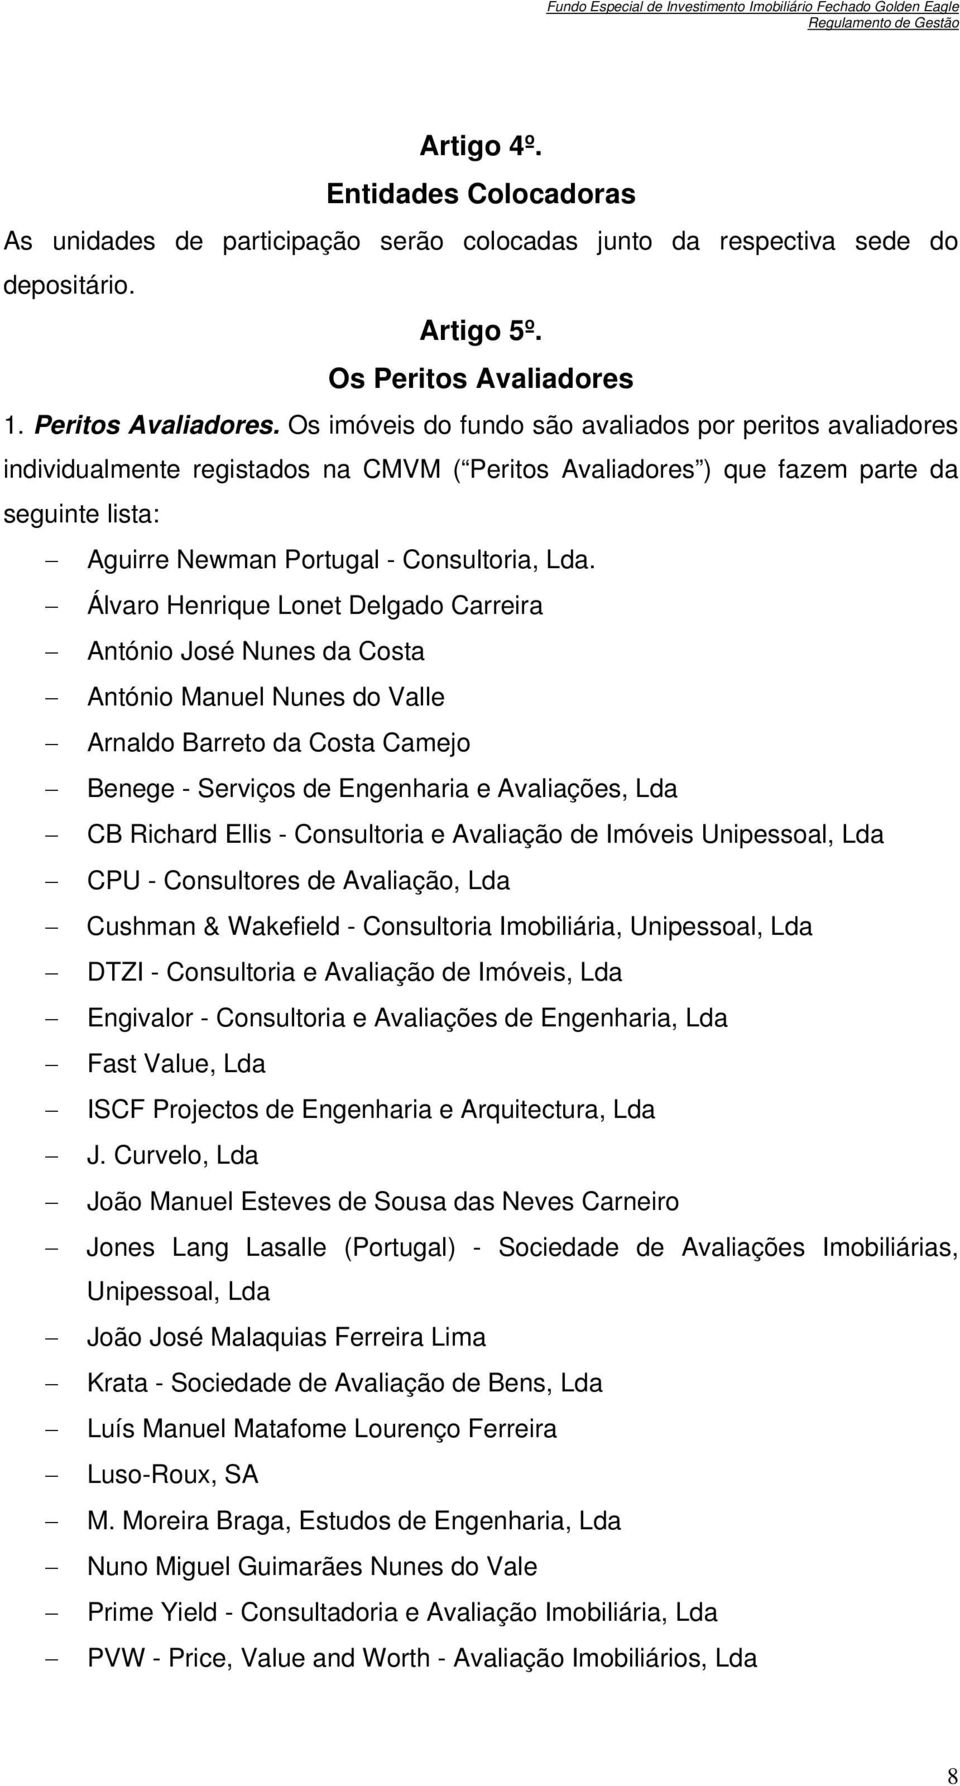 Os imóveis do fundo são avaliados por peritos avaliadores individualmente registados na CMVM ( Peritos Avaliadores ) que fazem parte da seguinte lista: Aguirre Newman Portugal - Consultoria, Lda.